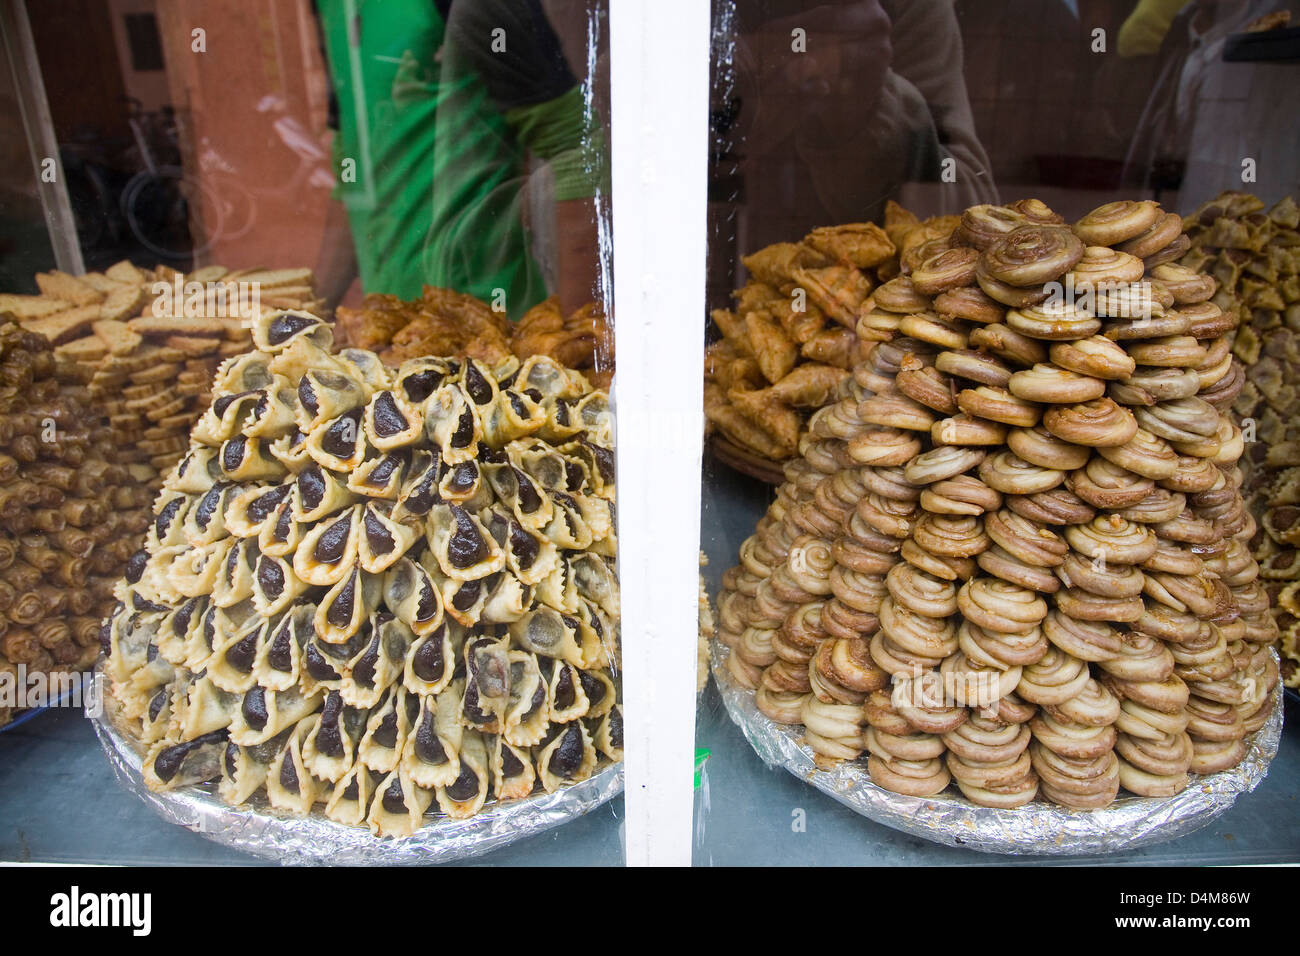 L'Afrique, Maroc, Marrakech, gâteaux typiques Banque D'Images